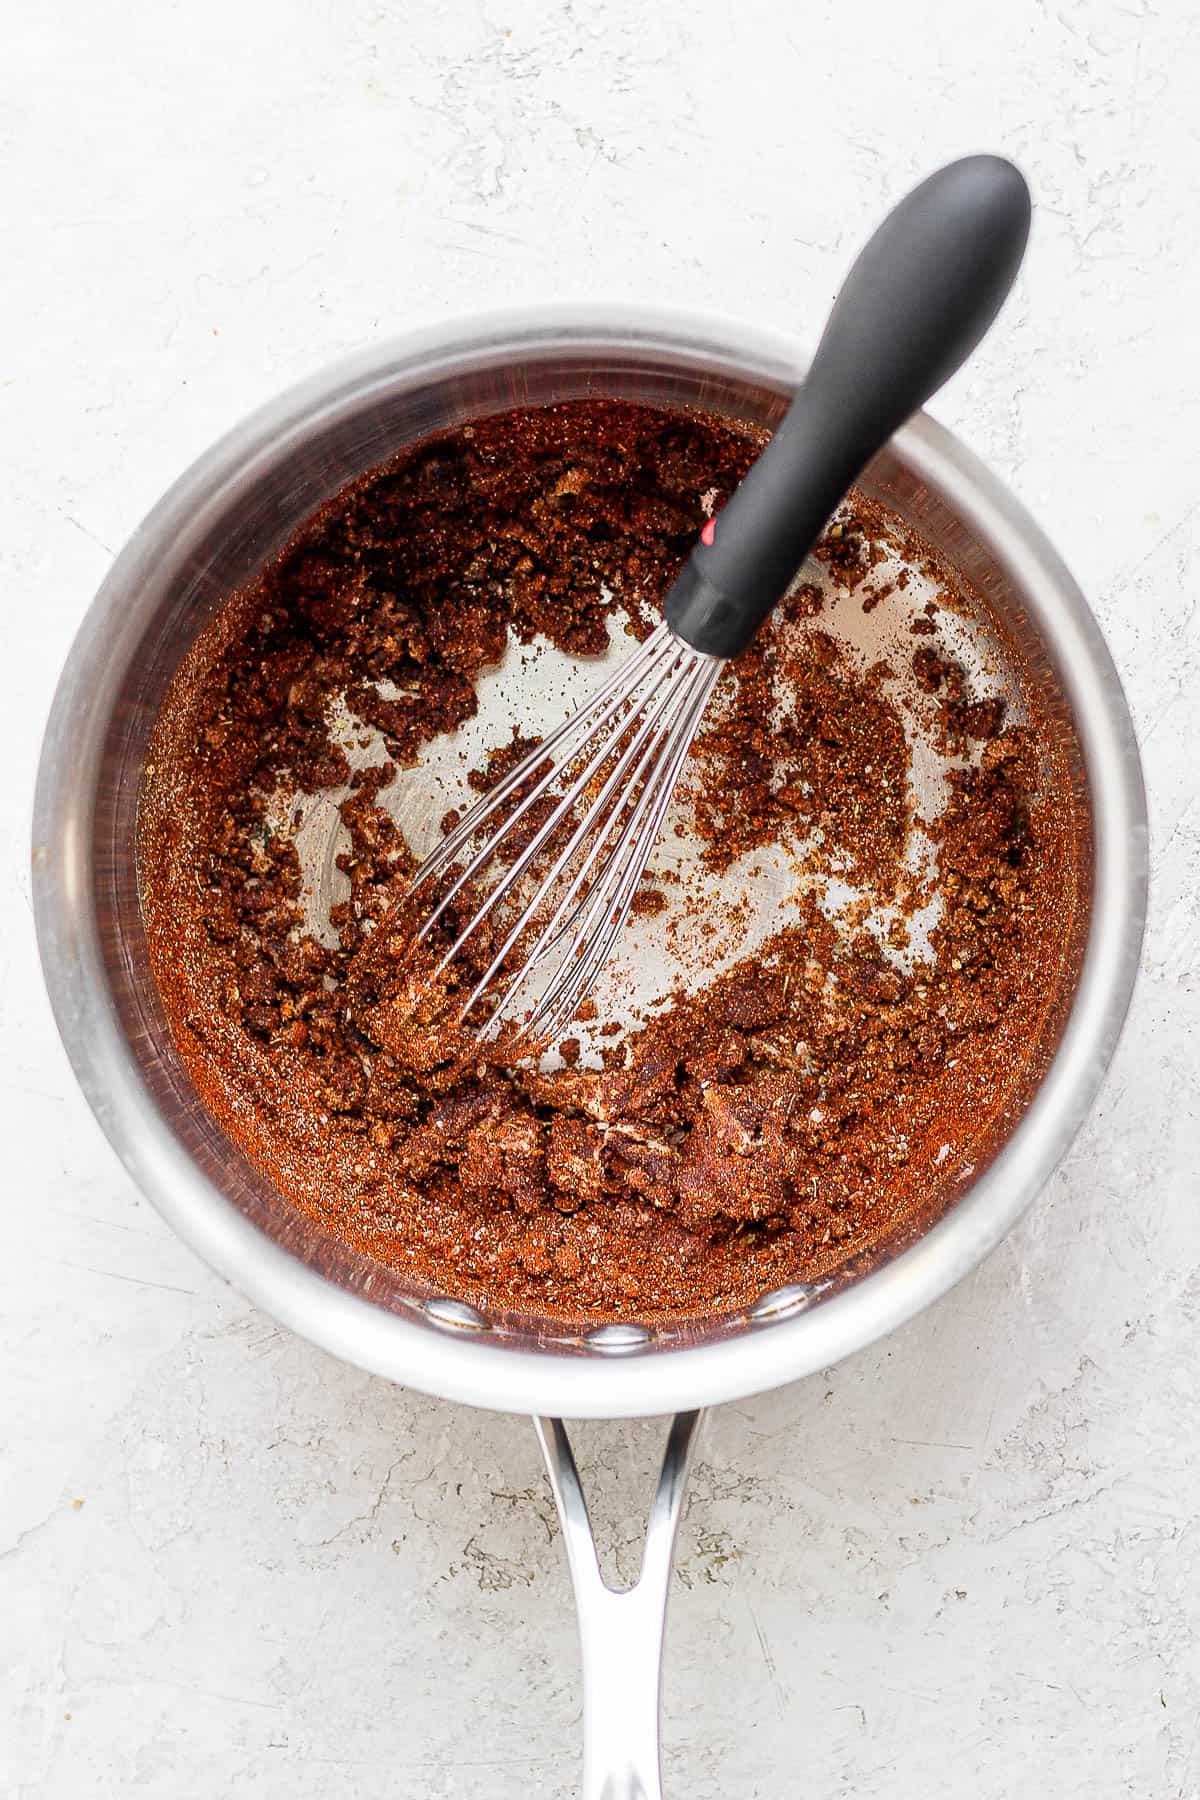 Medium saucepan with flour/oil roux + spices and tomato paste.